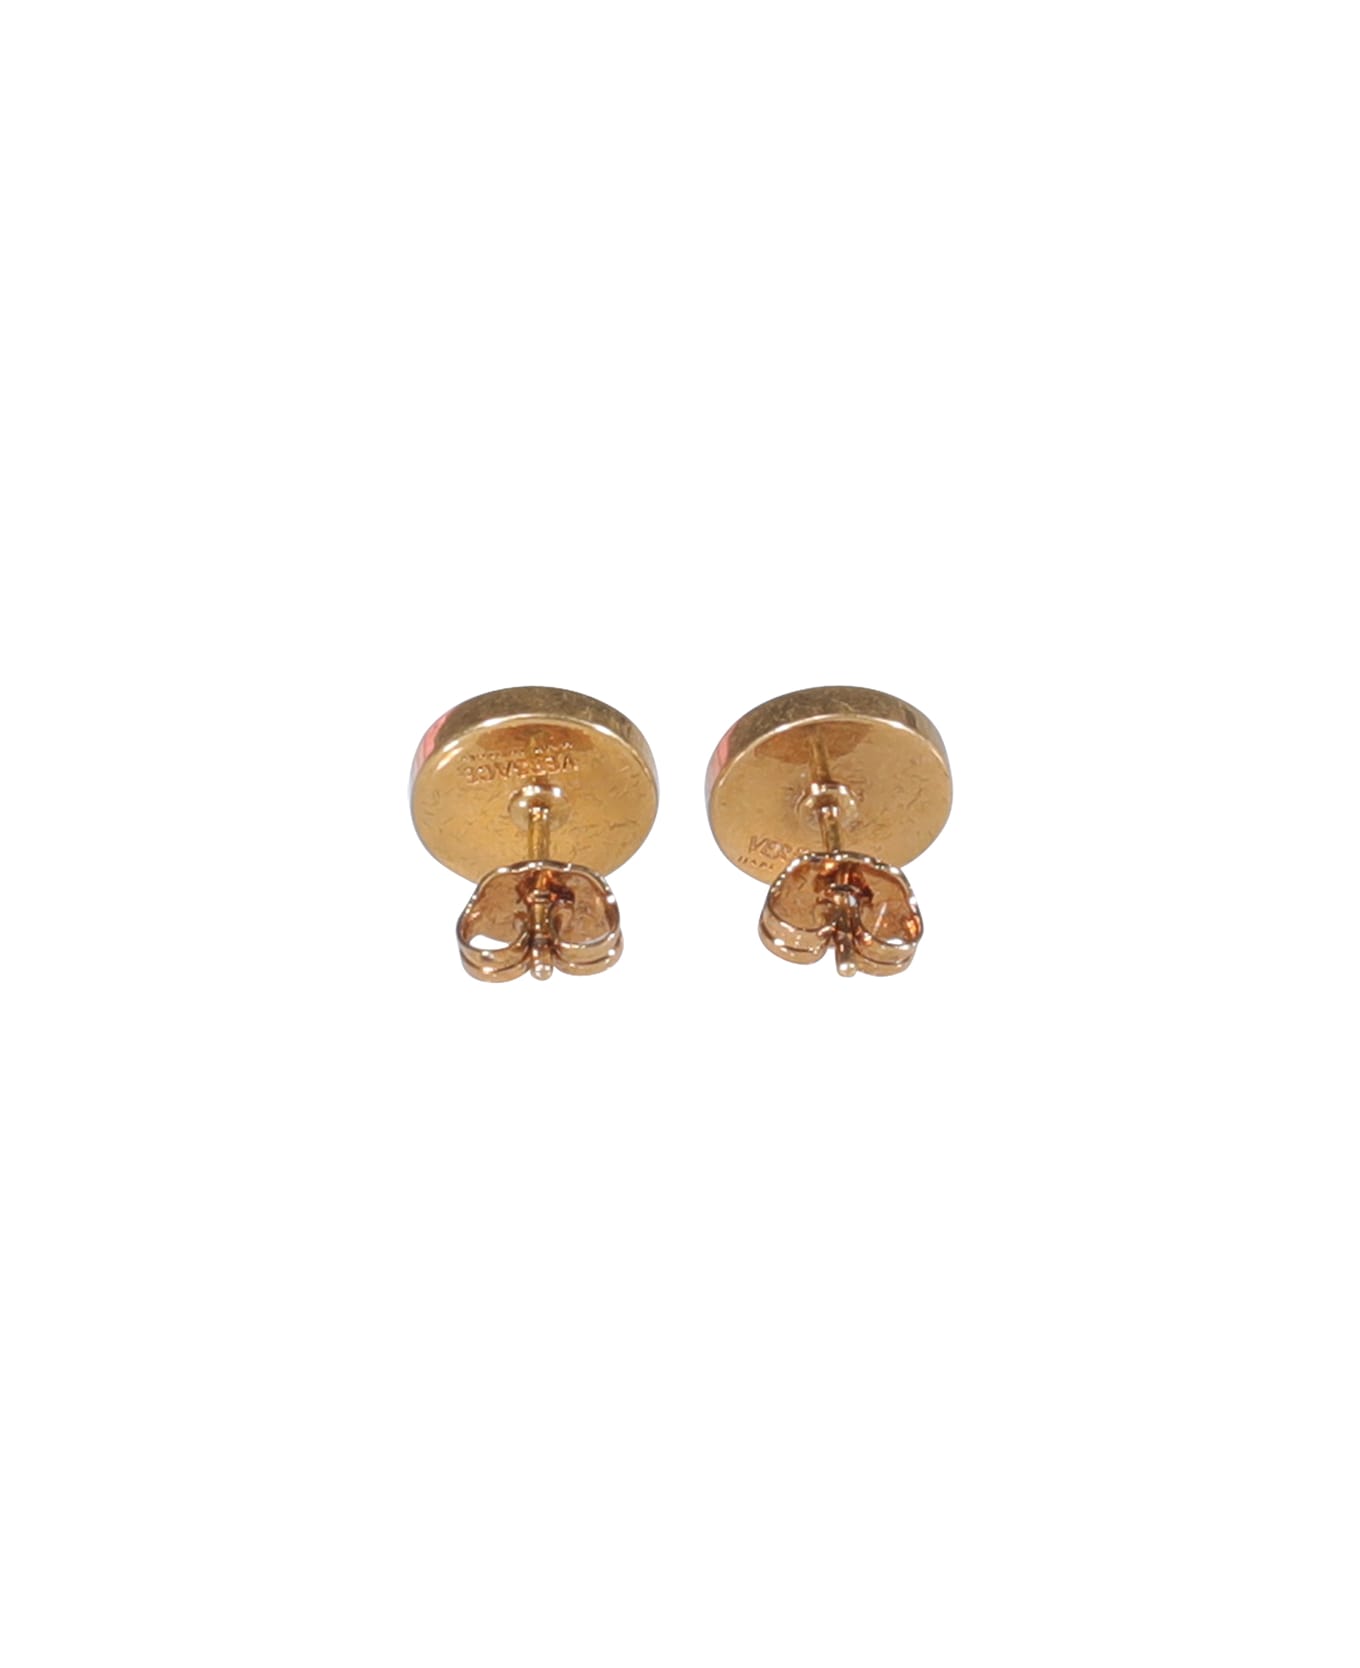 Versace Medusa Enameled Stud Earrings - GOLD ジュエリー